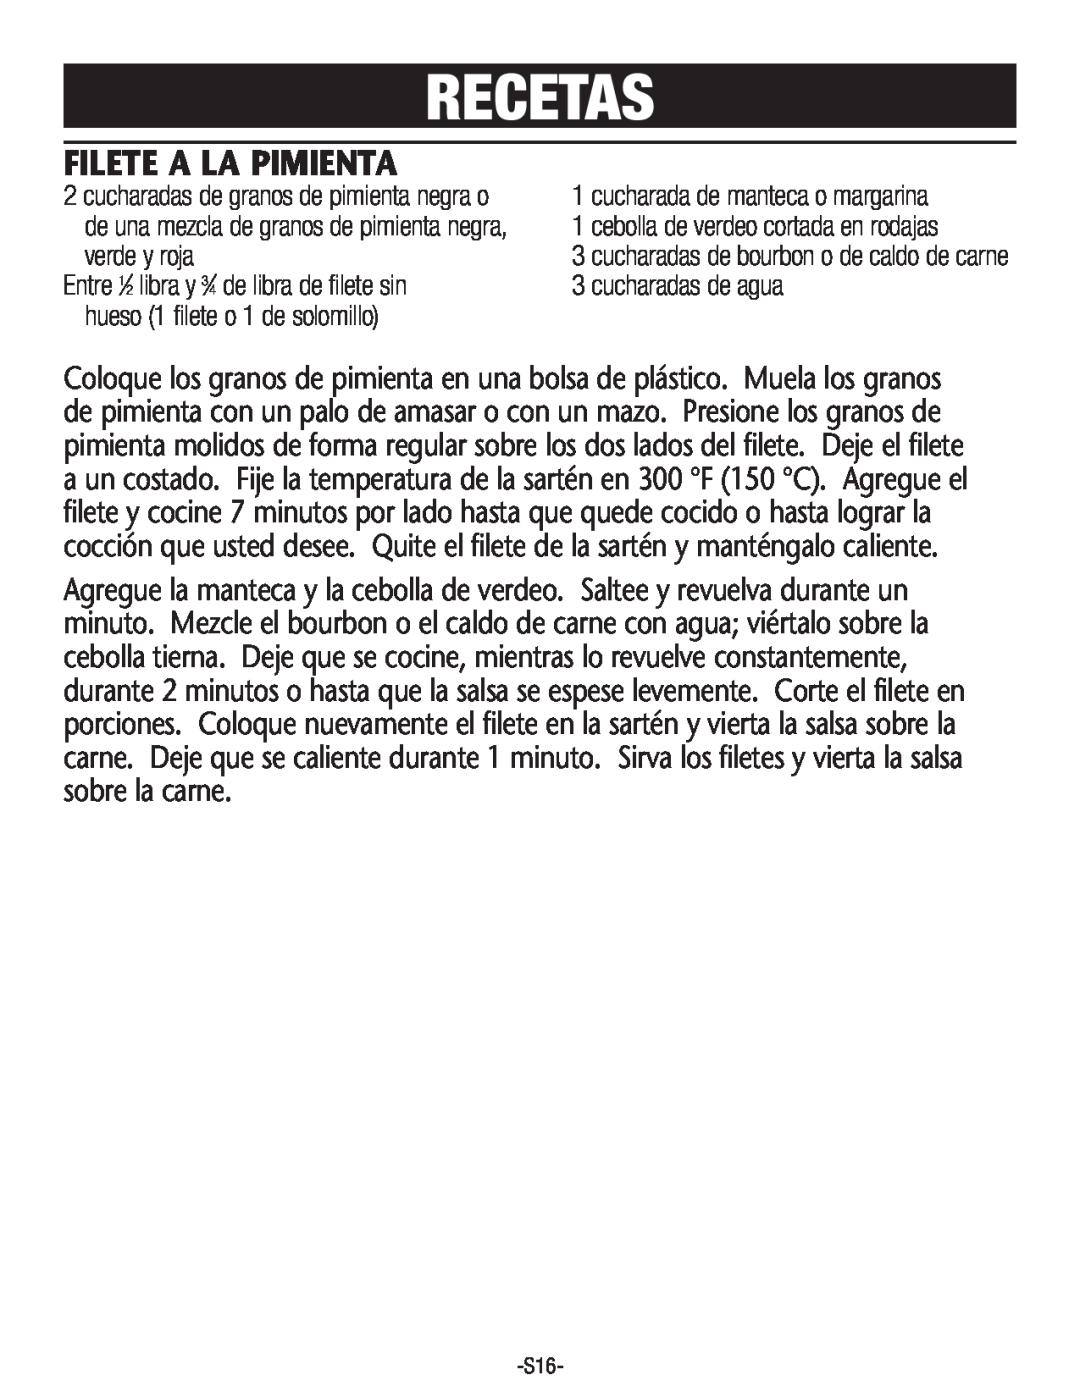 Rival S160 manual Recetas, Filete A La Pimienta, cucharadasde granos de pimientanegra o, cucharadade mantecao margarina 